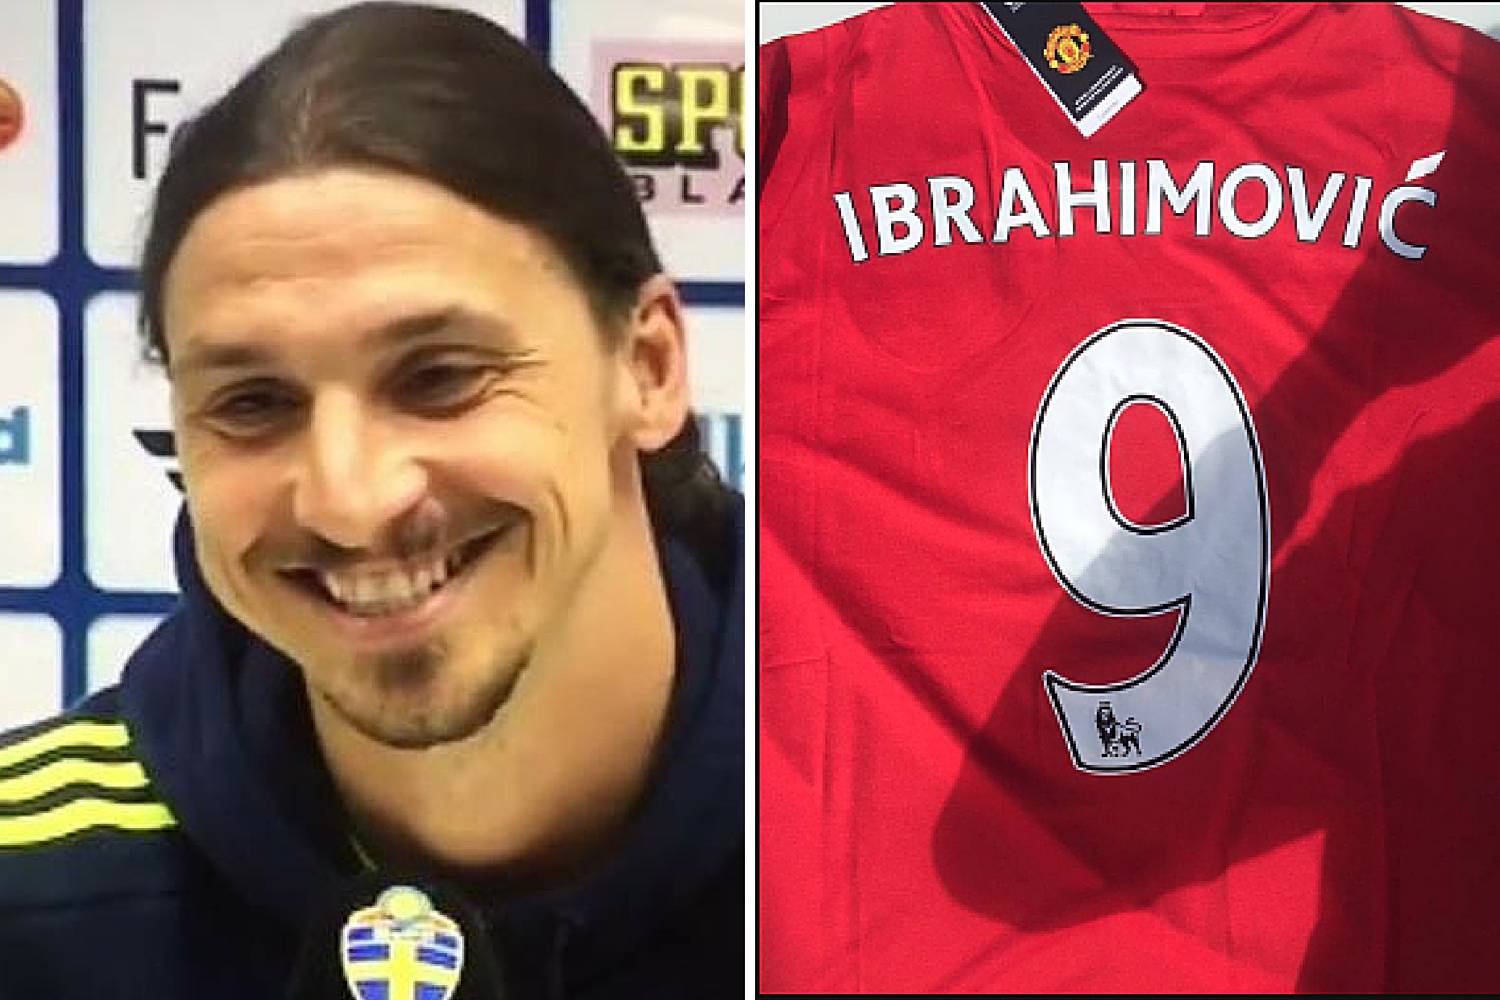 Ibrahimović konačno potvrdio: Stižem u Manchester United!